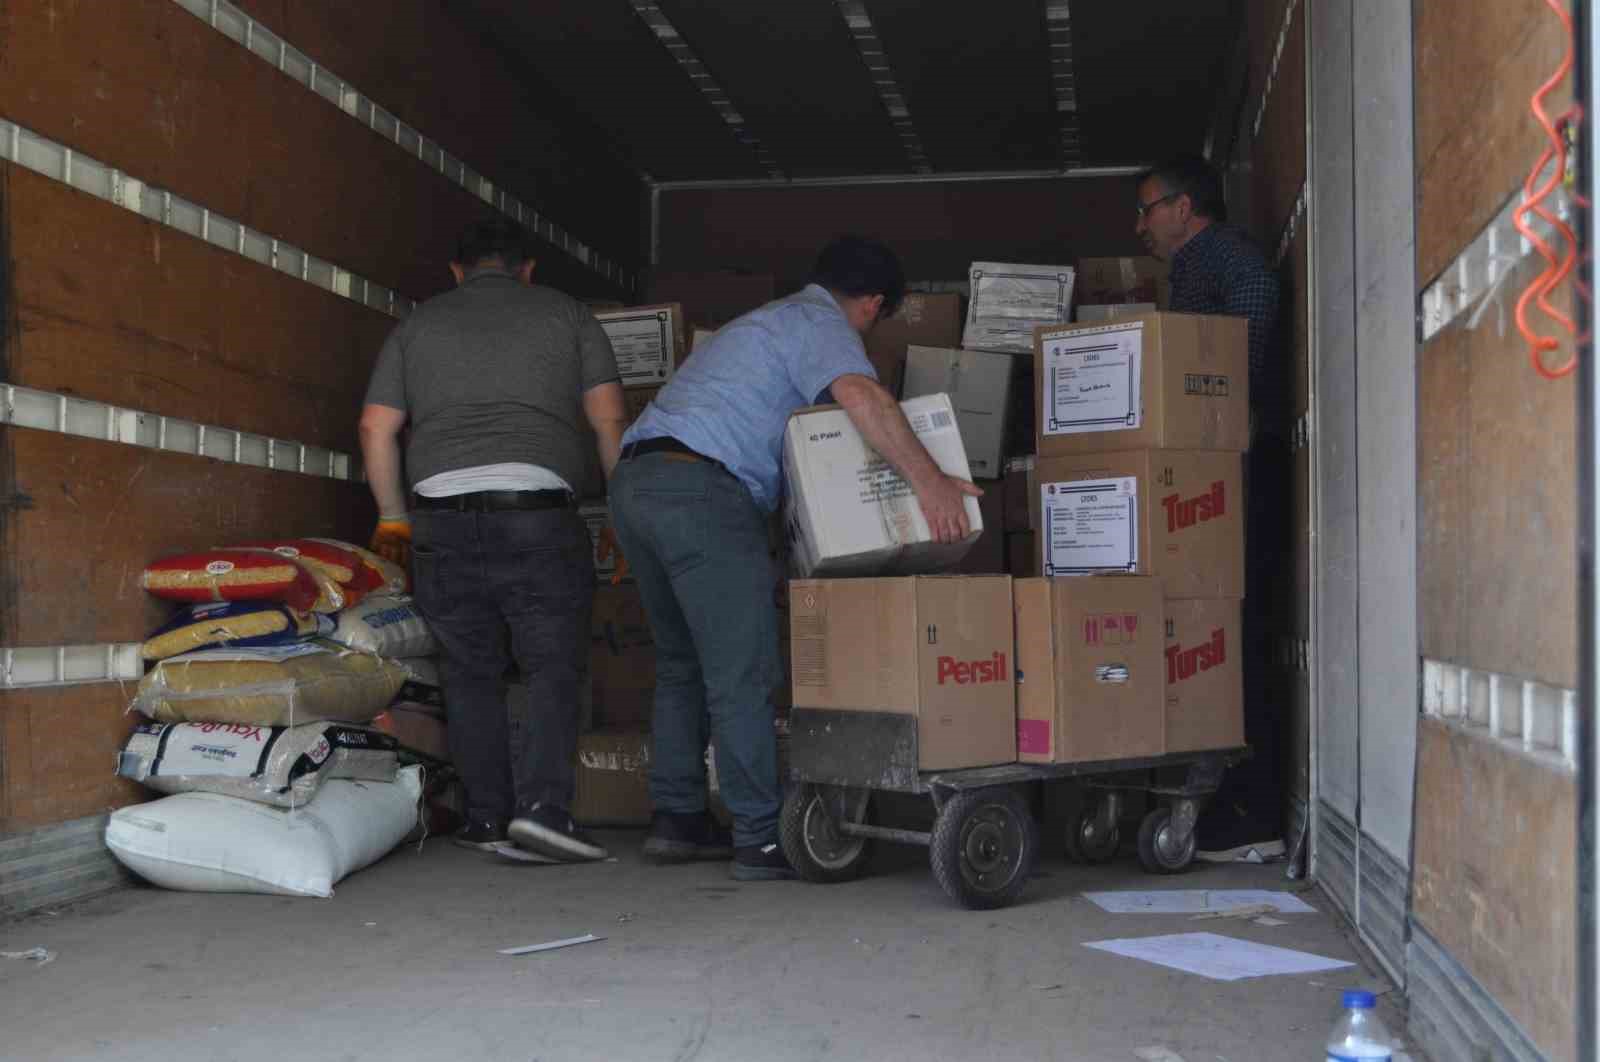 Eskişehir İl Milli Eğitim Müdürlüğü’nün ikinci yardım kamyonu Hatay’a gidiyor